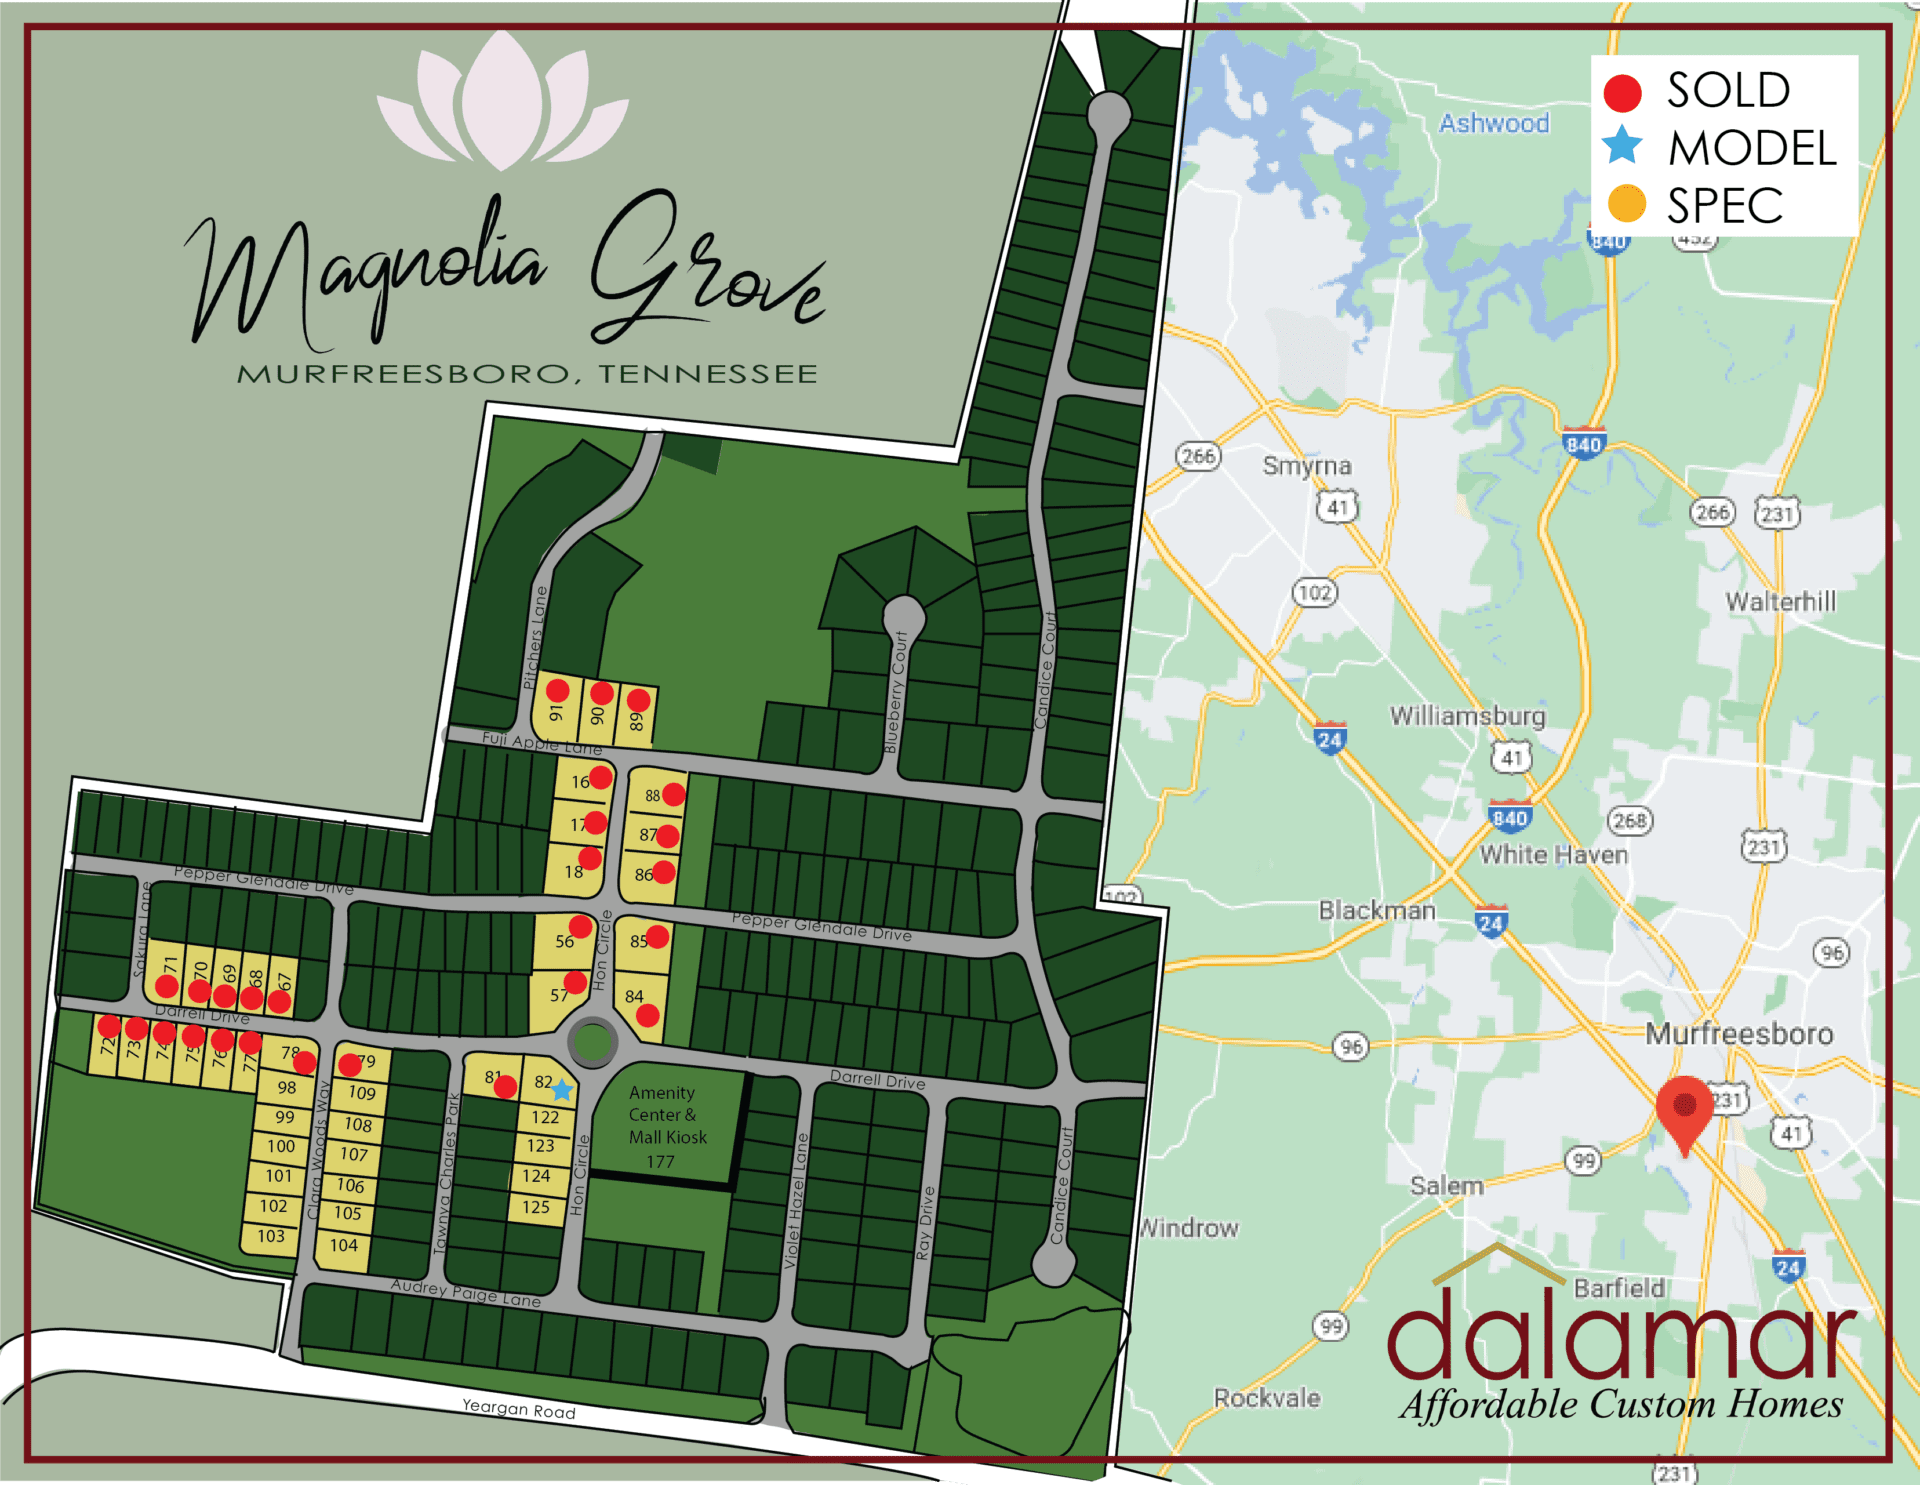 Magnolia Grove new construction map for Murfreesboro, TN